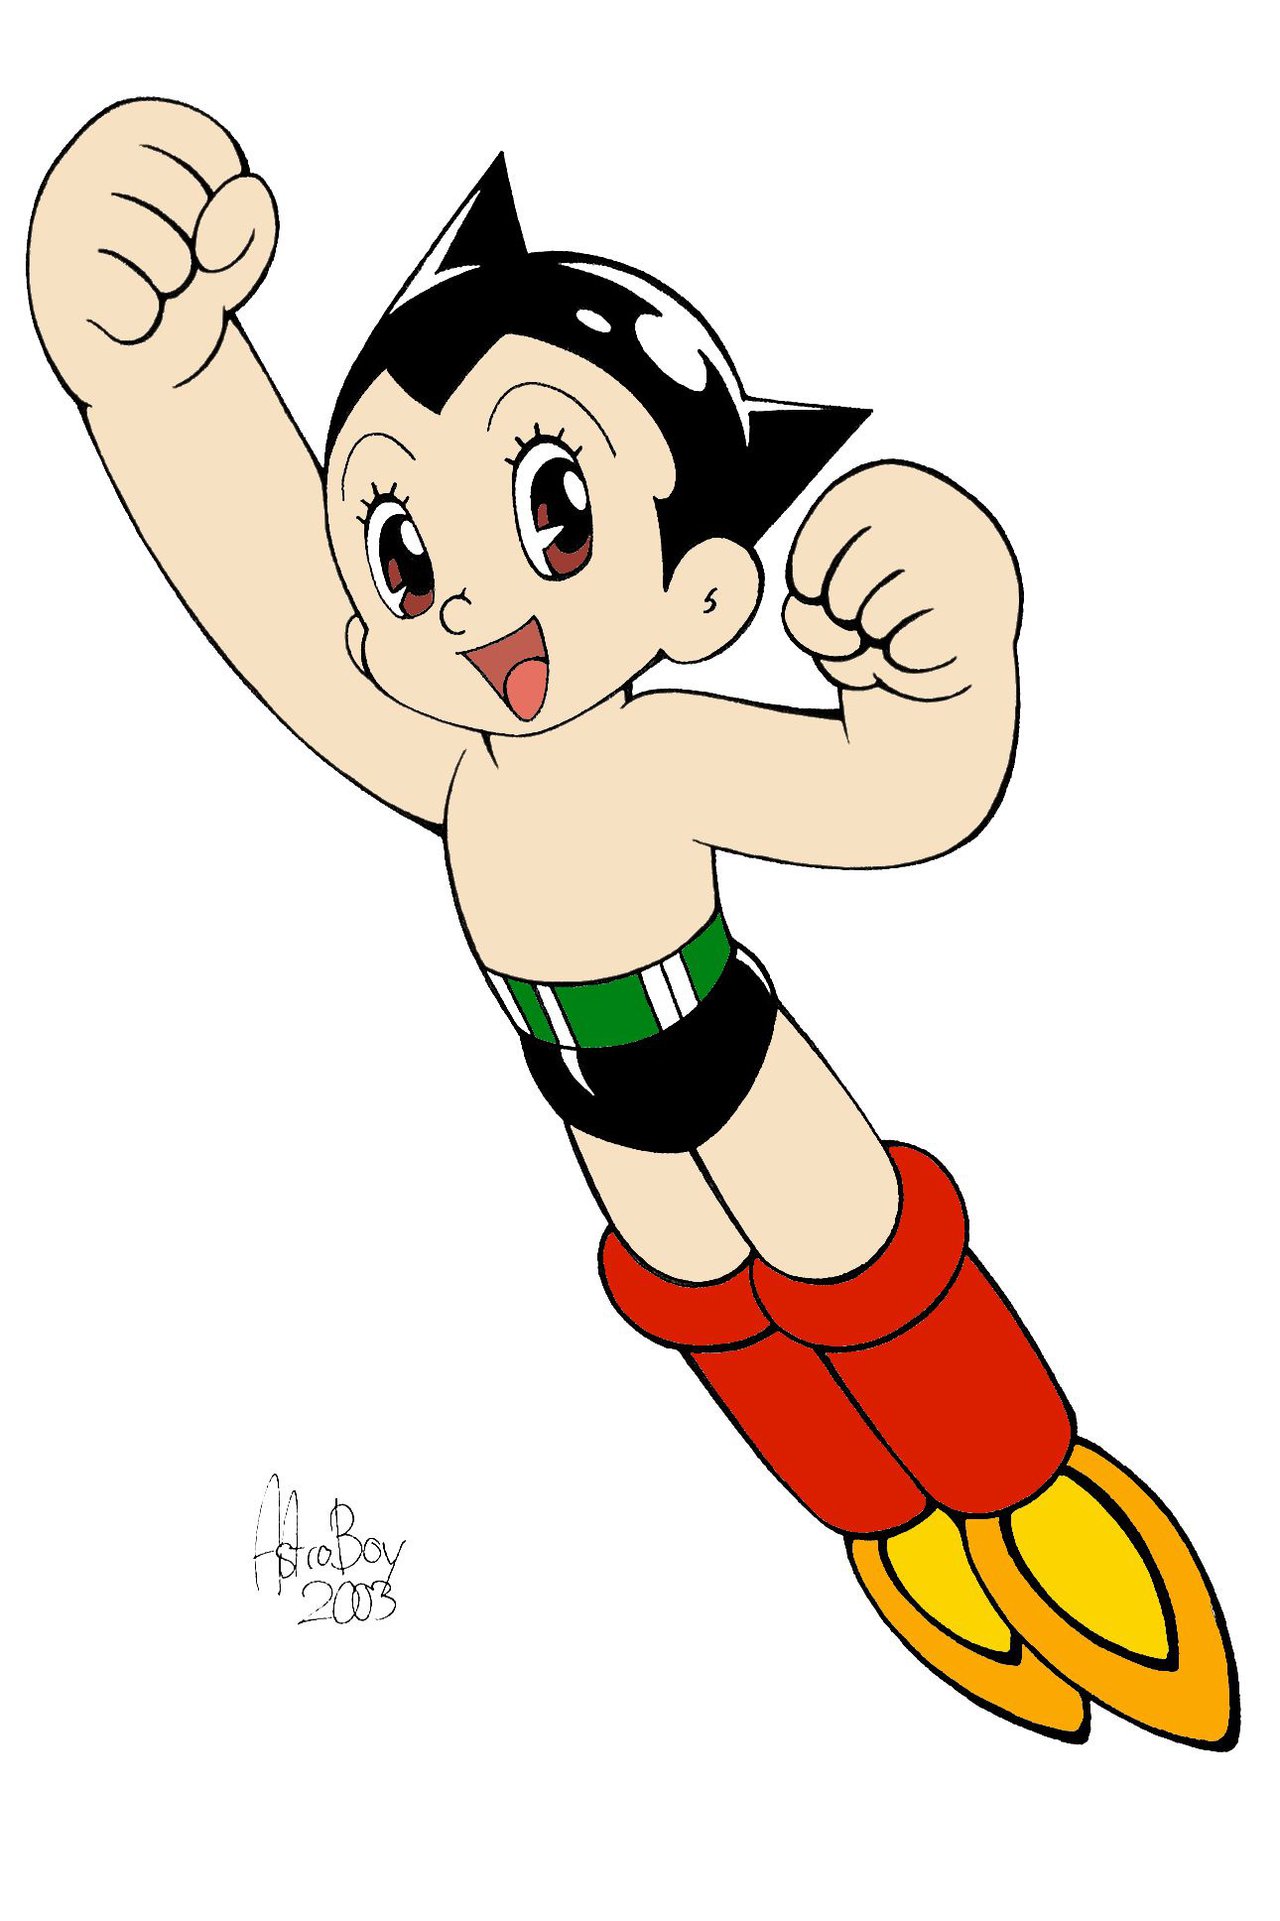 Astro Boy #3.